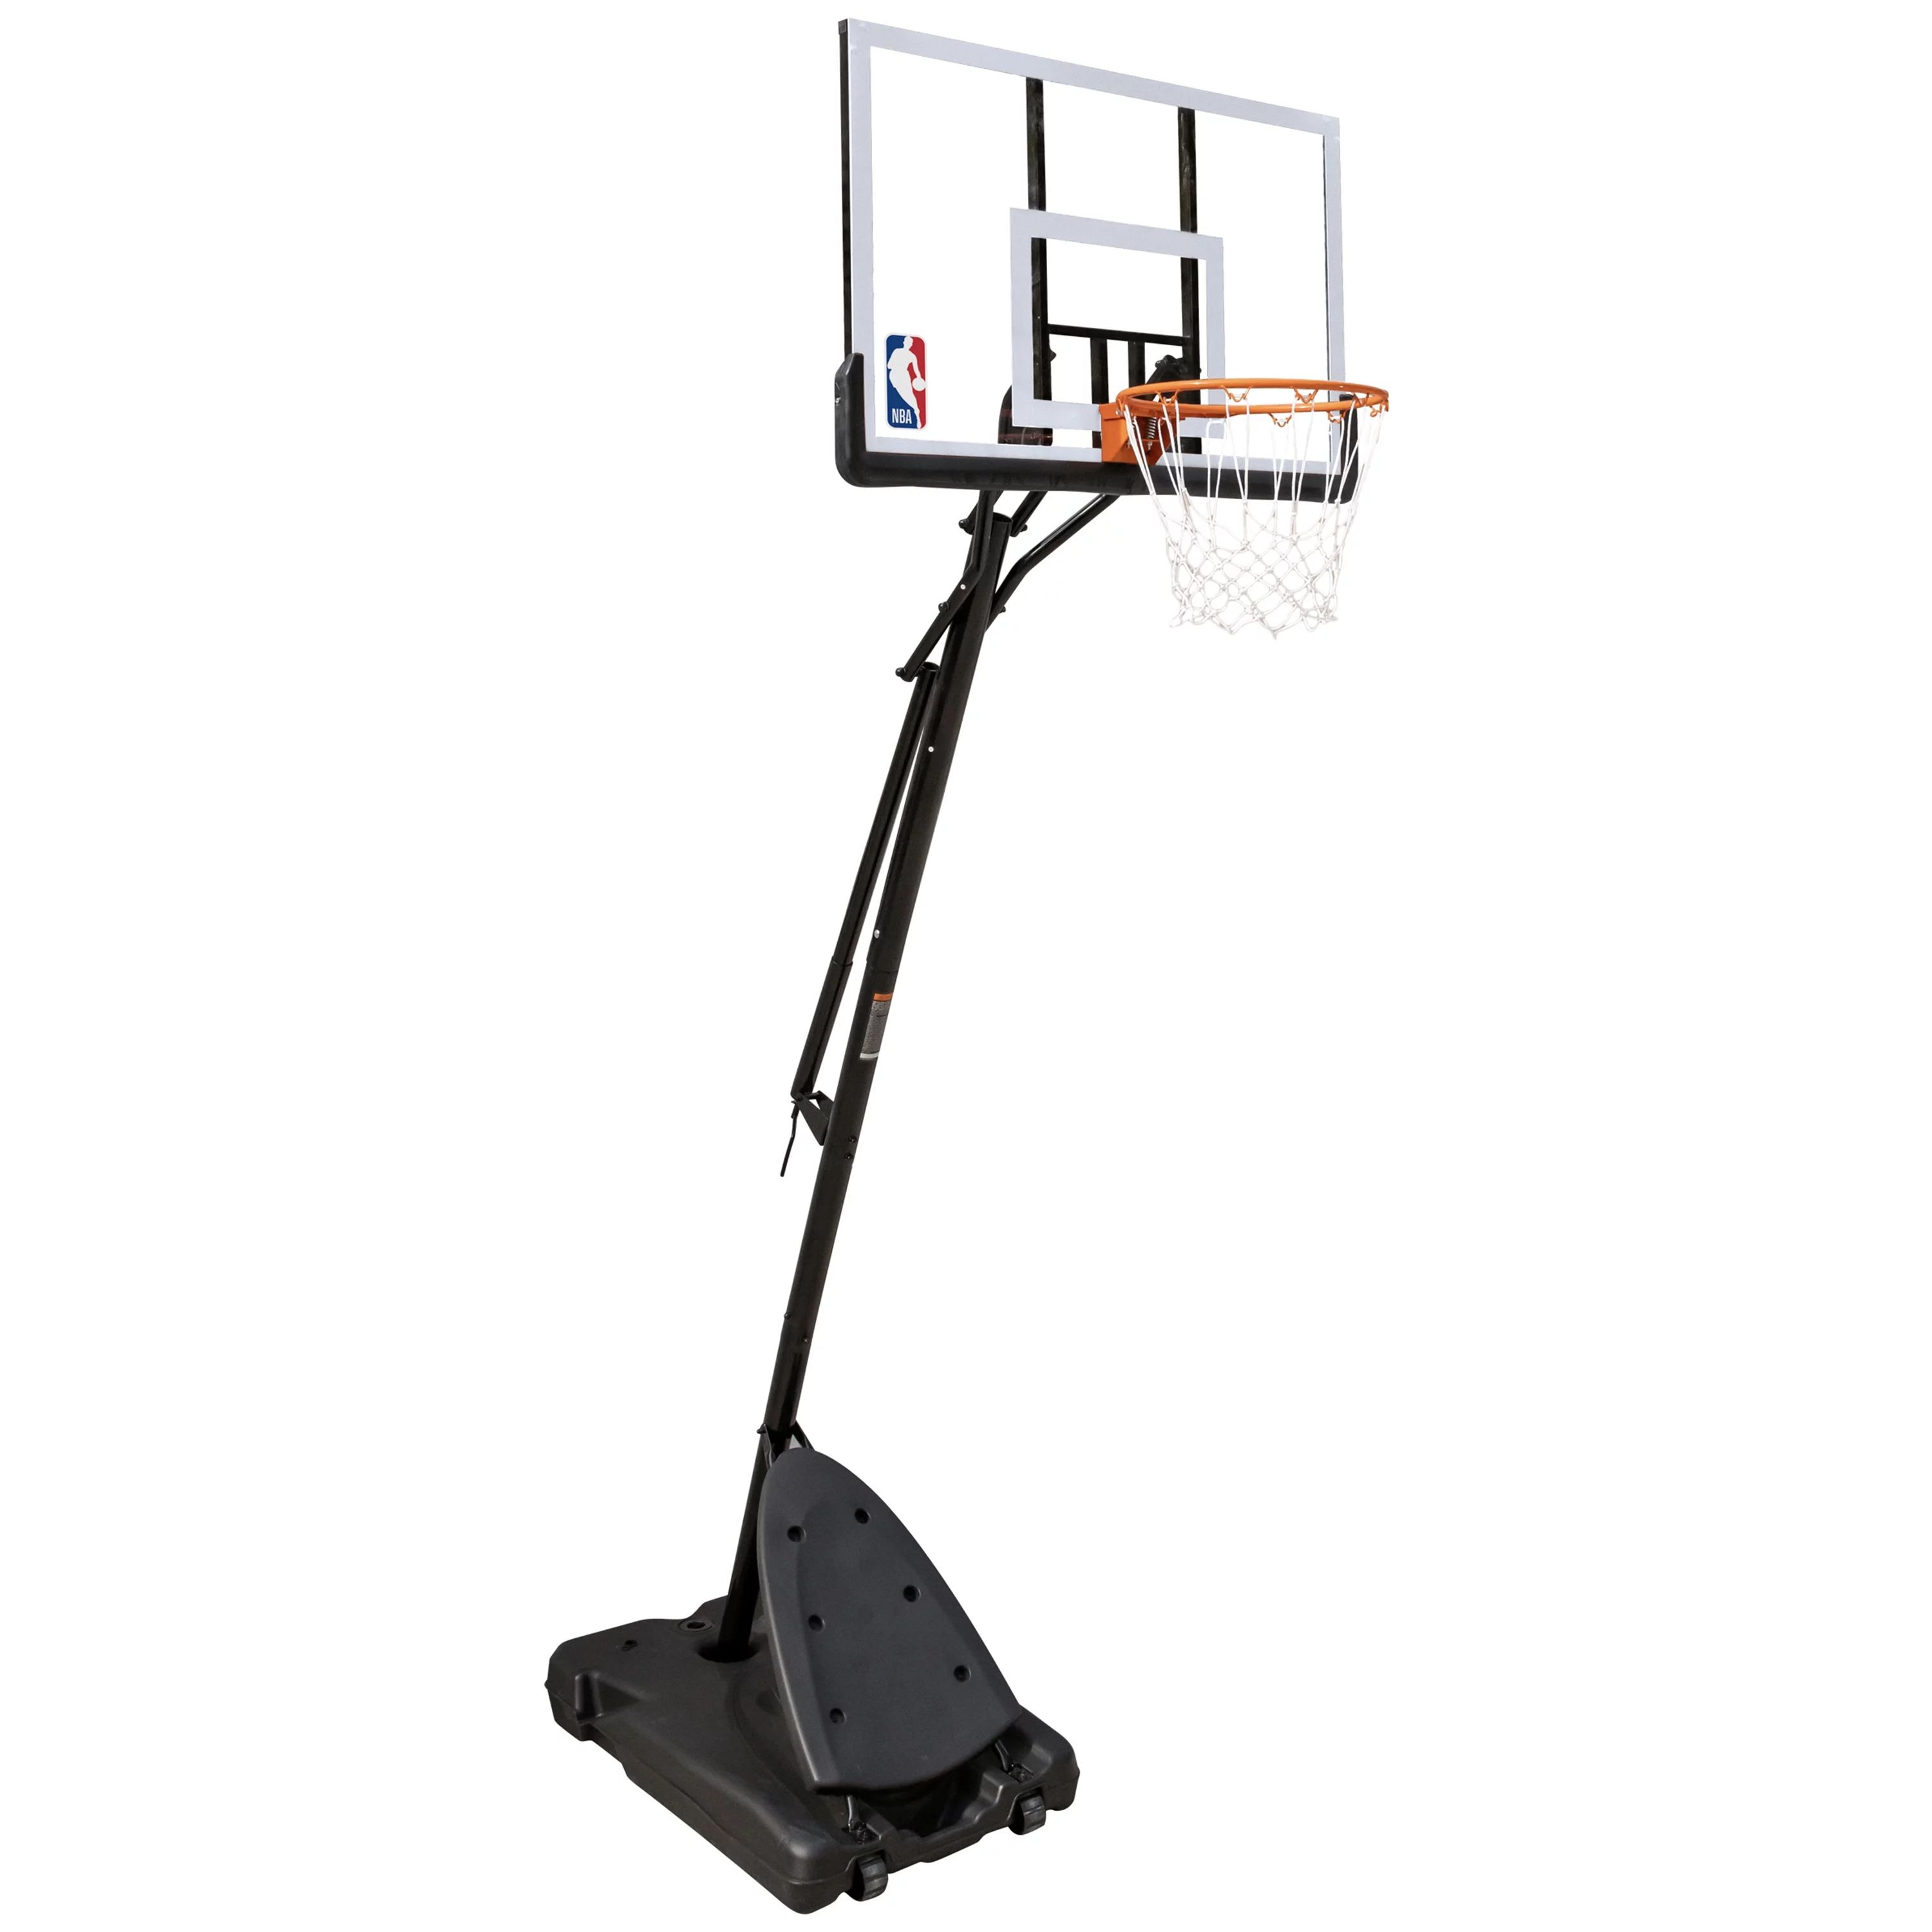 NBA 50" Portable Basketball Hoop with Polycarbonate Backboard | Walmart (US)